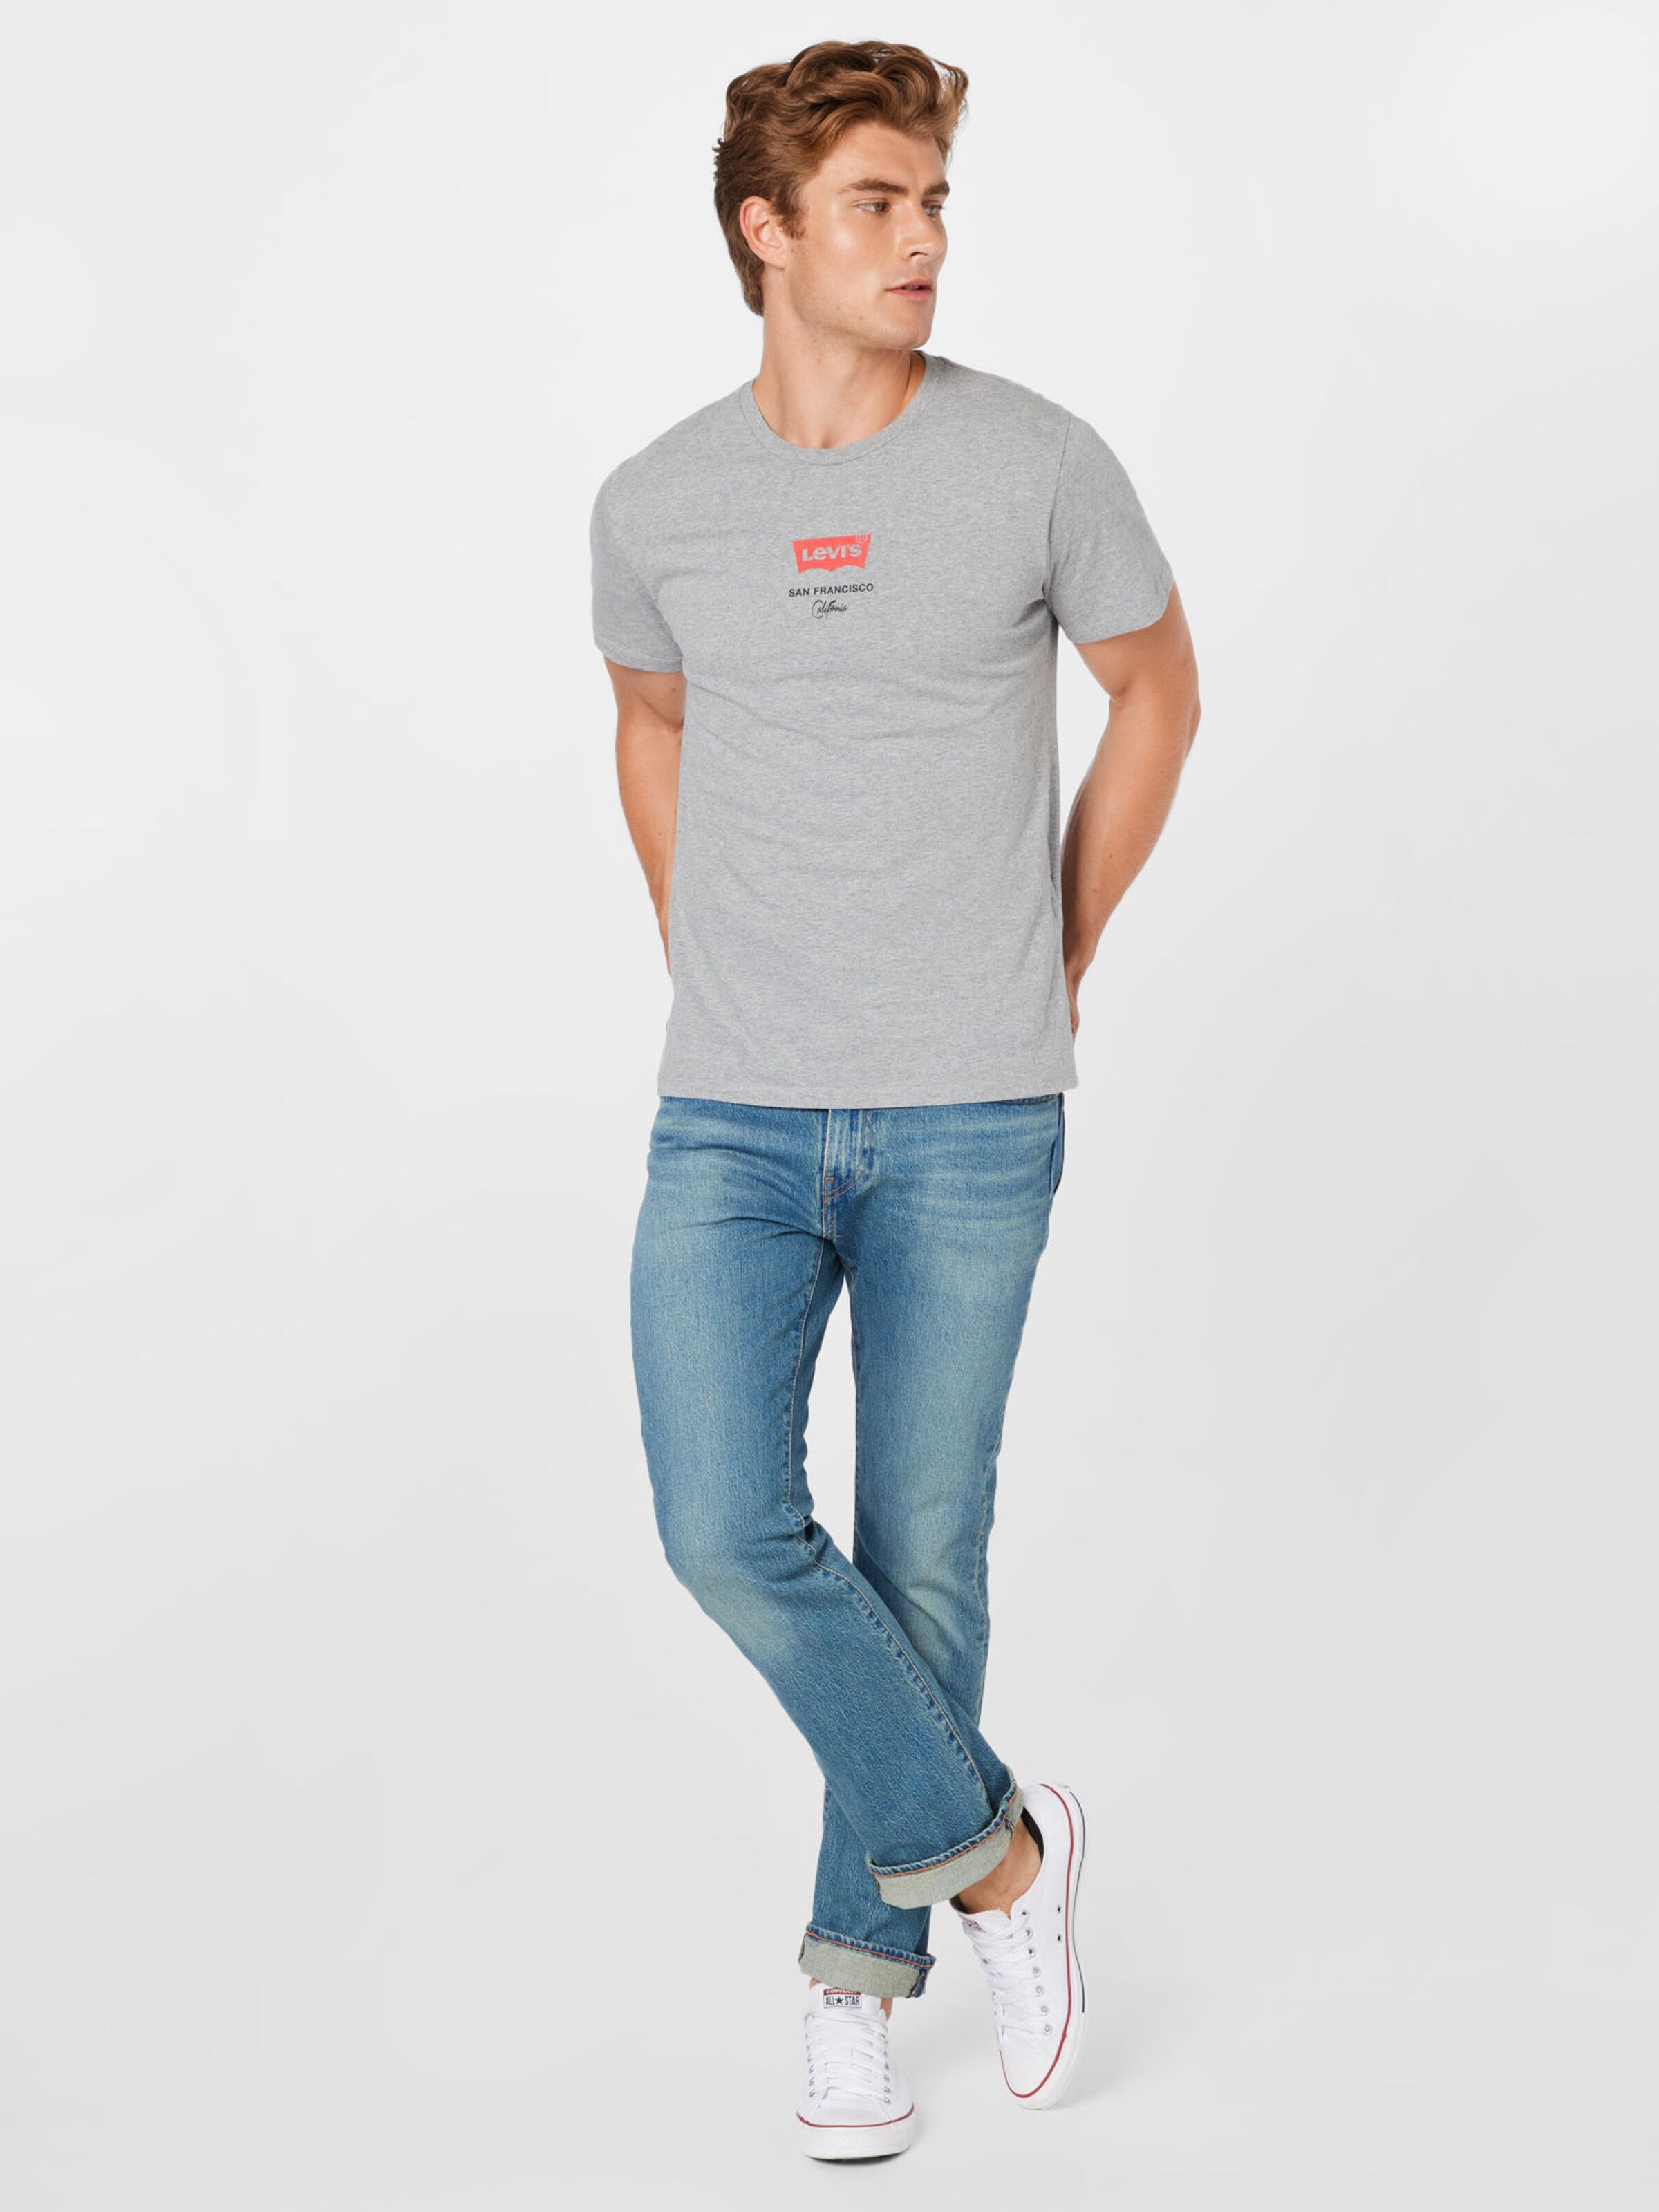 Männer Shirts LEVI'S T-Shirt in Hellgrau - VZ71376